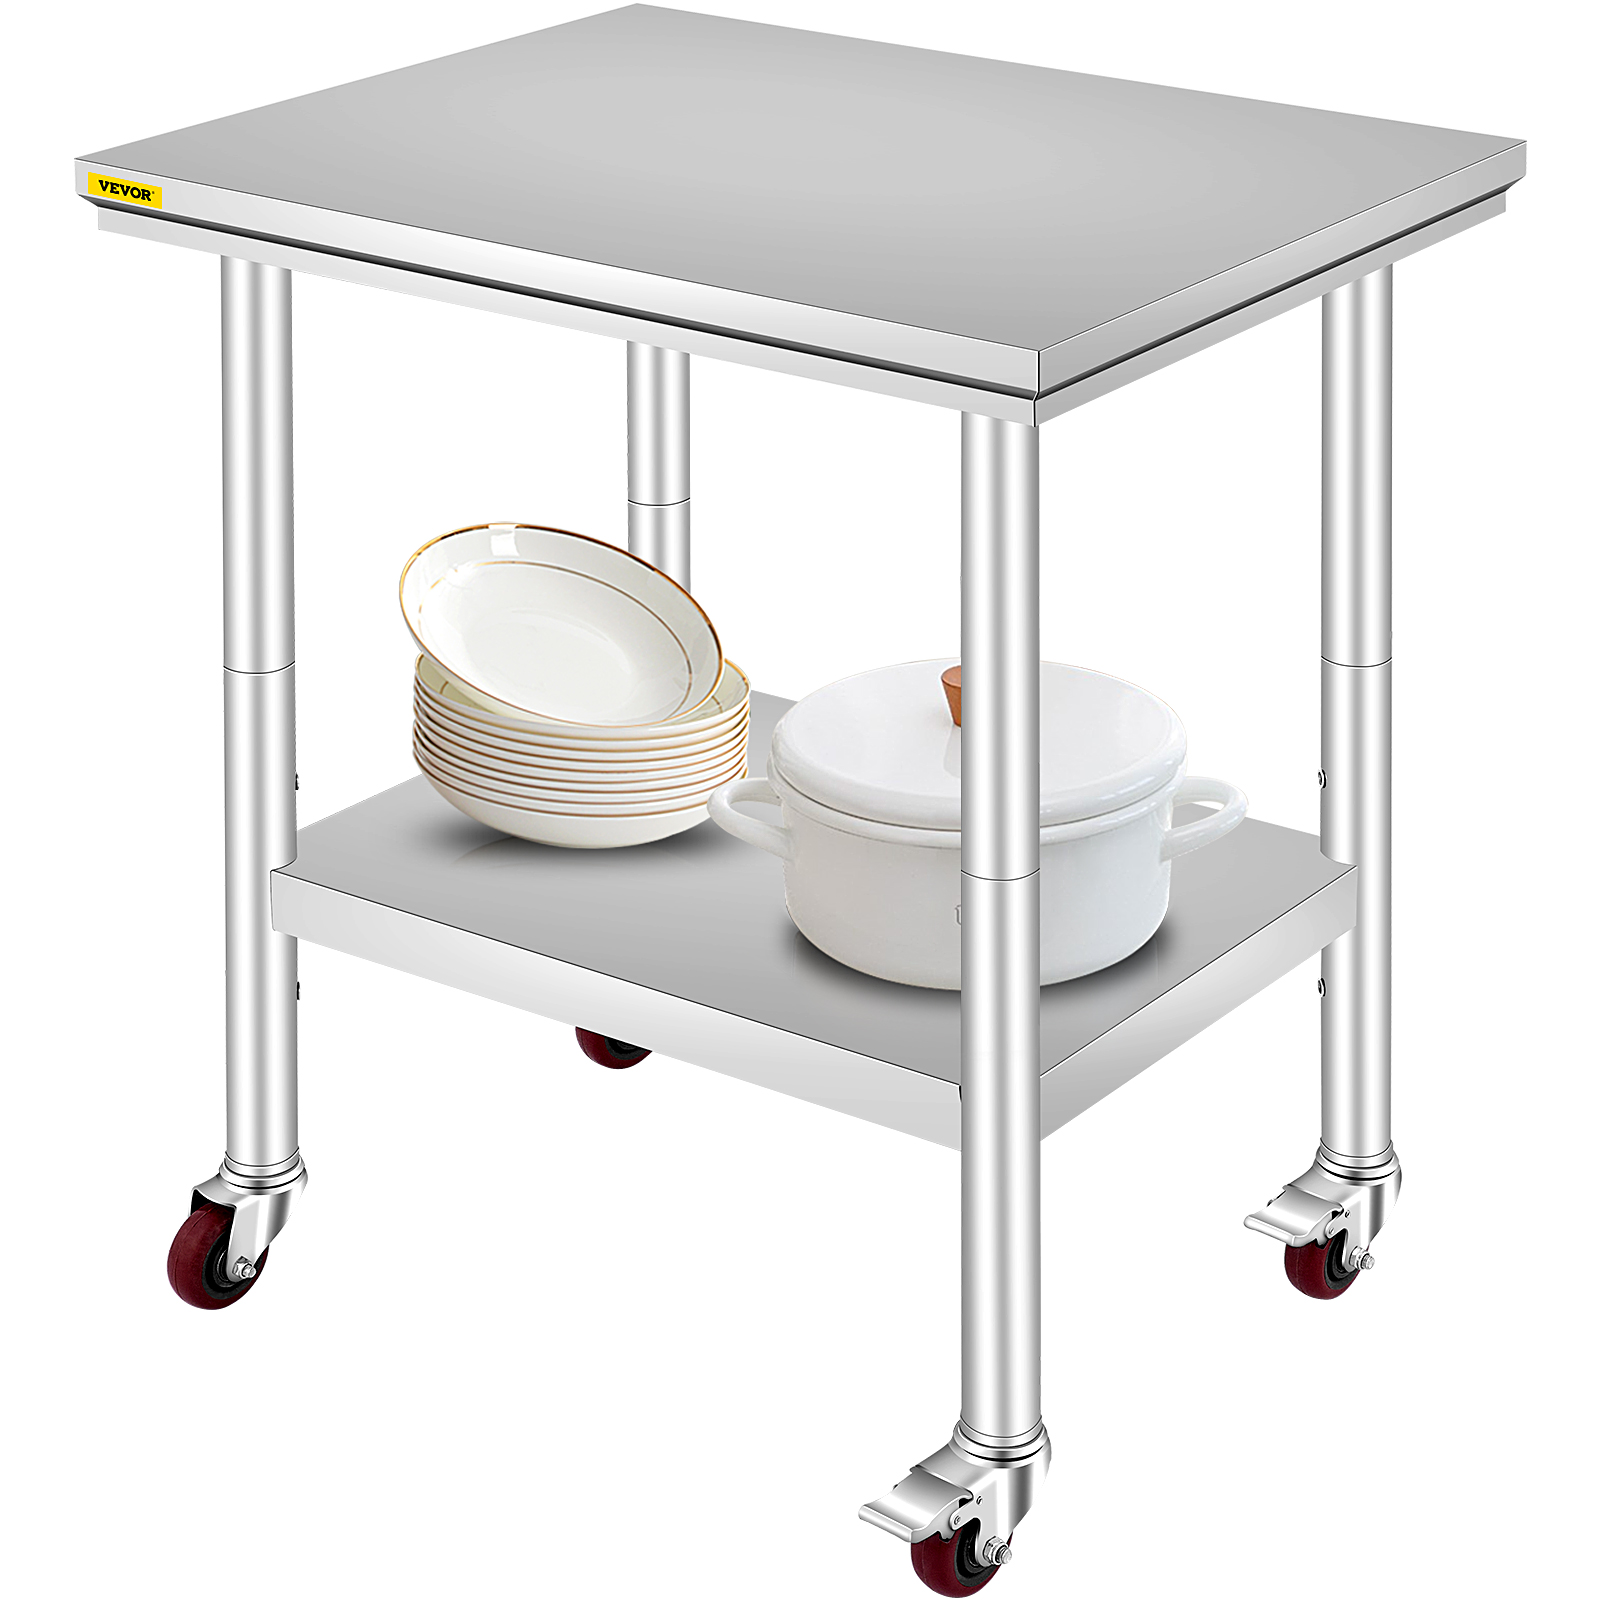 Blackpoolal mesa de cocina mesa de preparación Kichen doble capa para uso comercial y doméstico 120 x 60 x 90 cm acero inoxidable Banco de trabajo resistente 